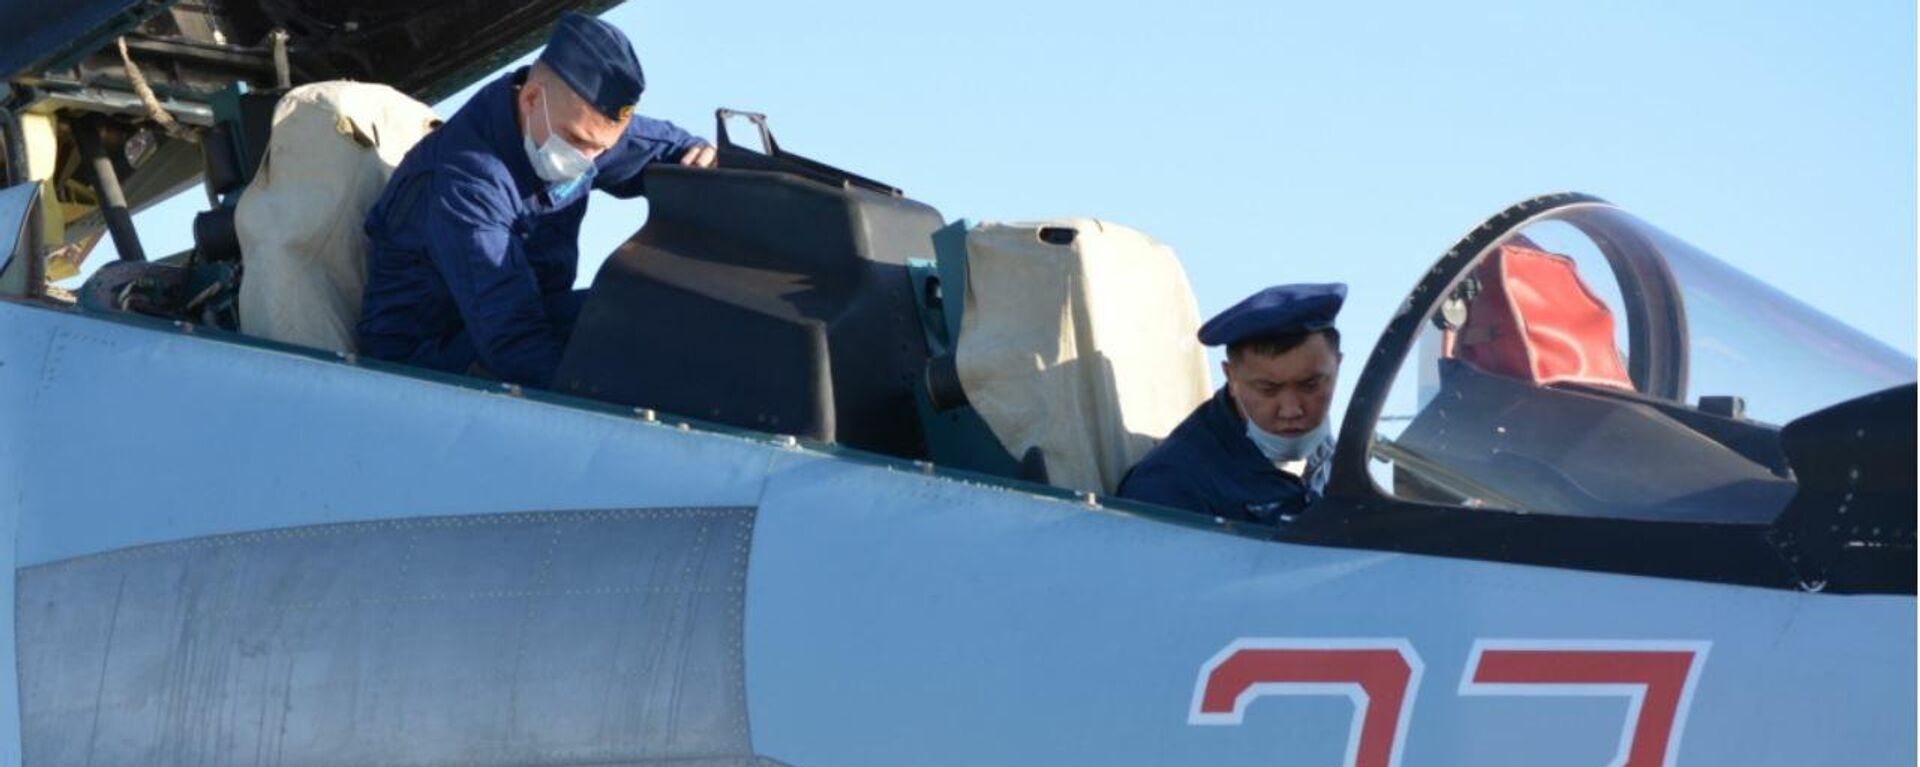 Экипажи истребителей Су-30СМ ВКС РФ провели совместную летную тренировку с летчиками ВВС Армии Китая - Sputnik Латвия, 1920, 09.08.2021